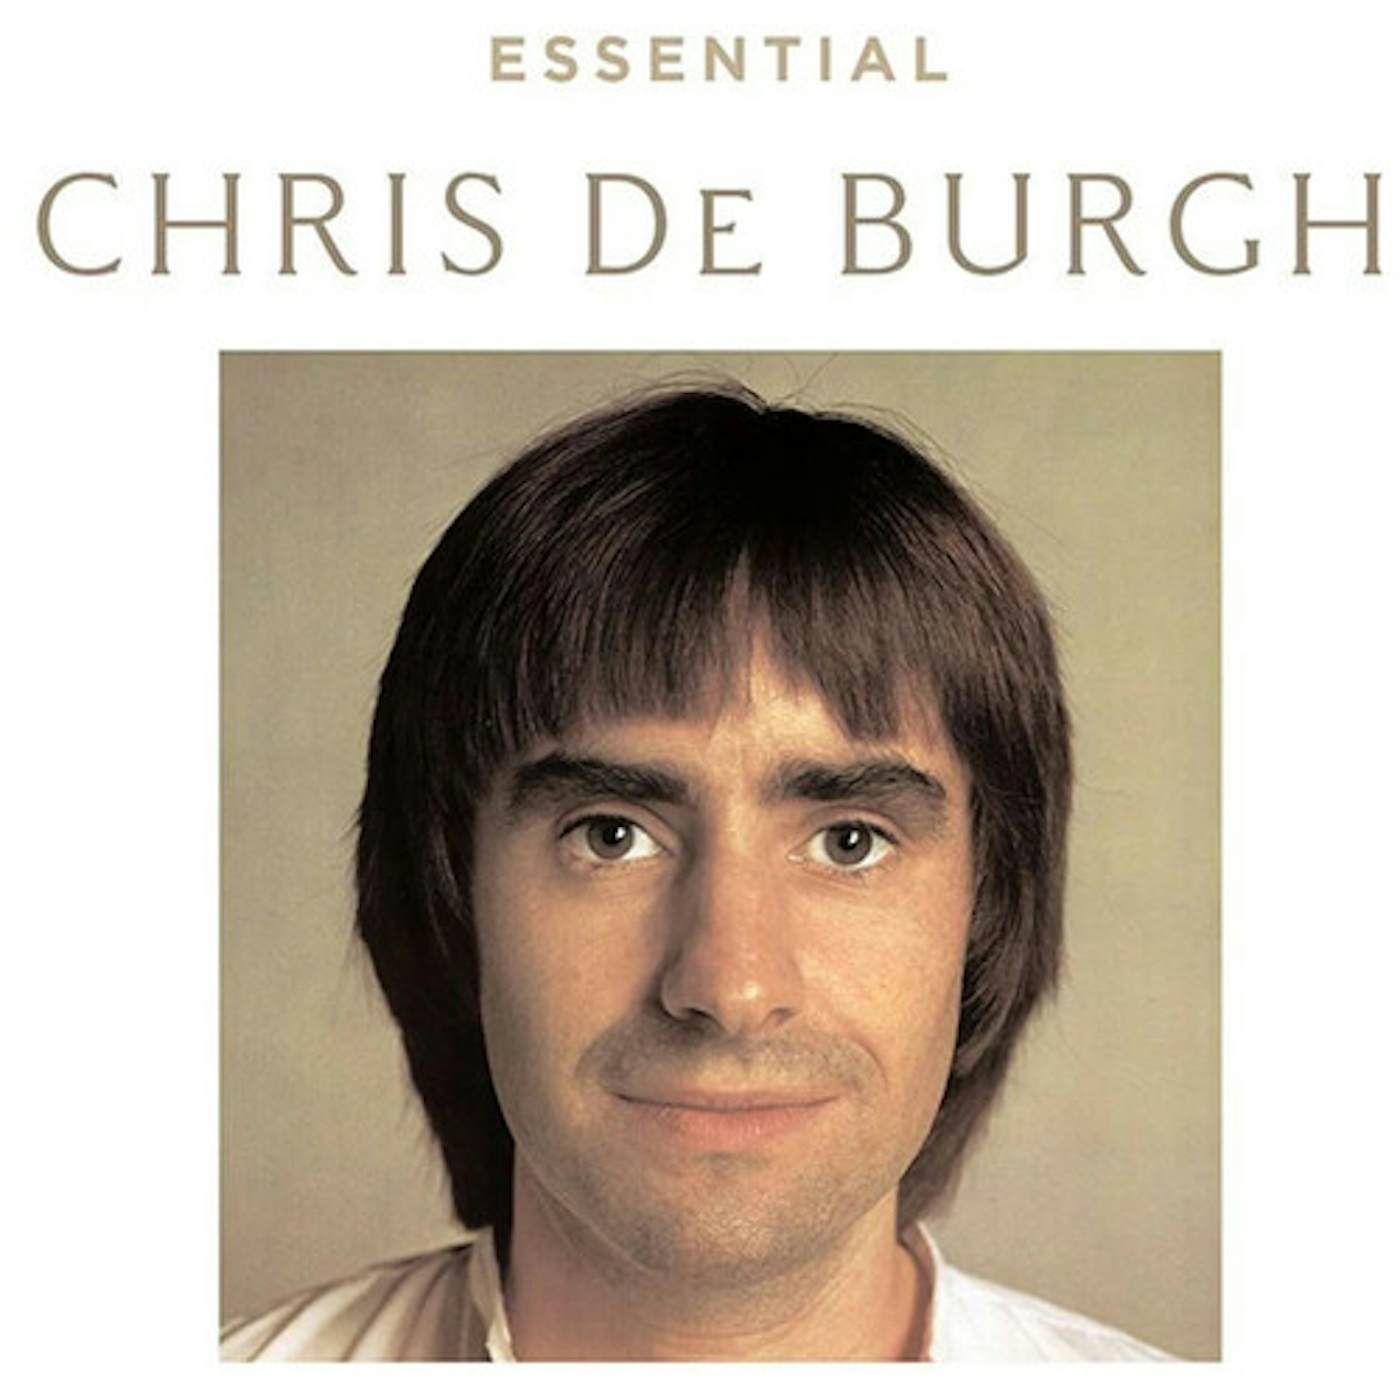 ESSENTIAL CHRIS DE BURGH CD